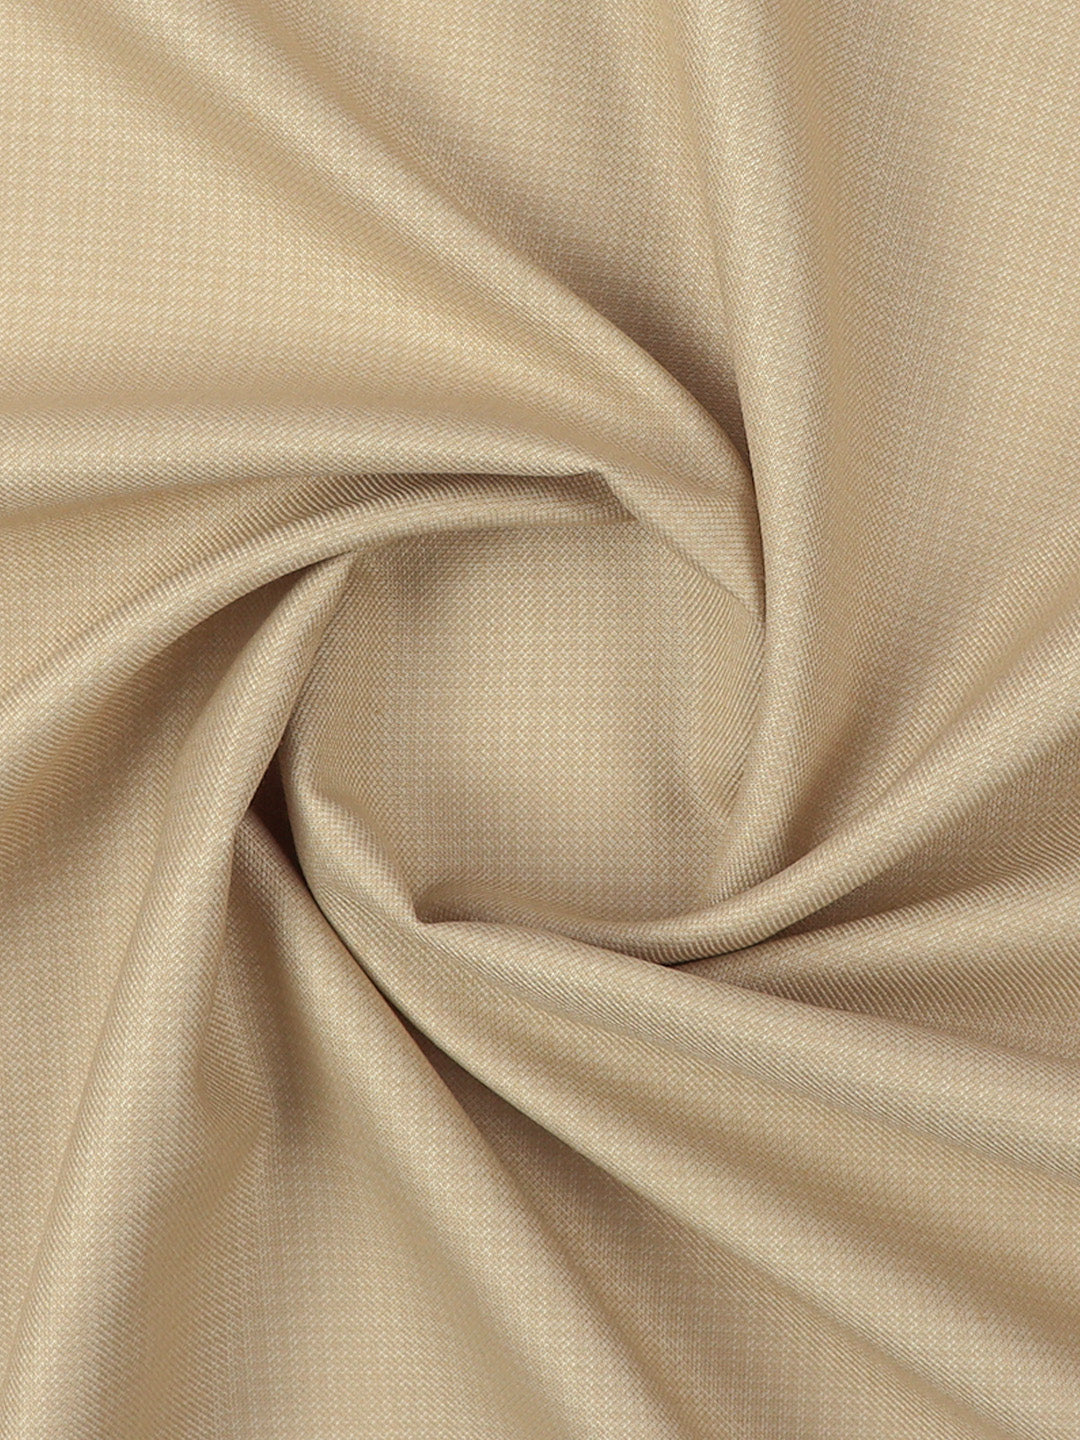 Cotton Blended Sandal Colour Premium Suiting Fabric-Golden Days